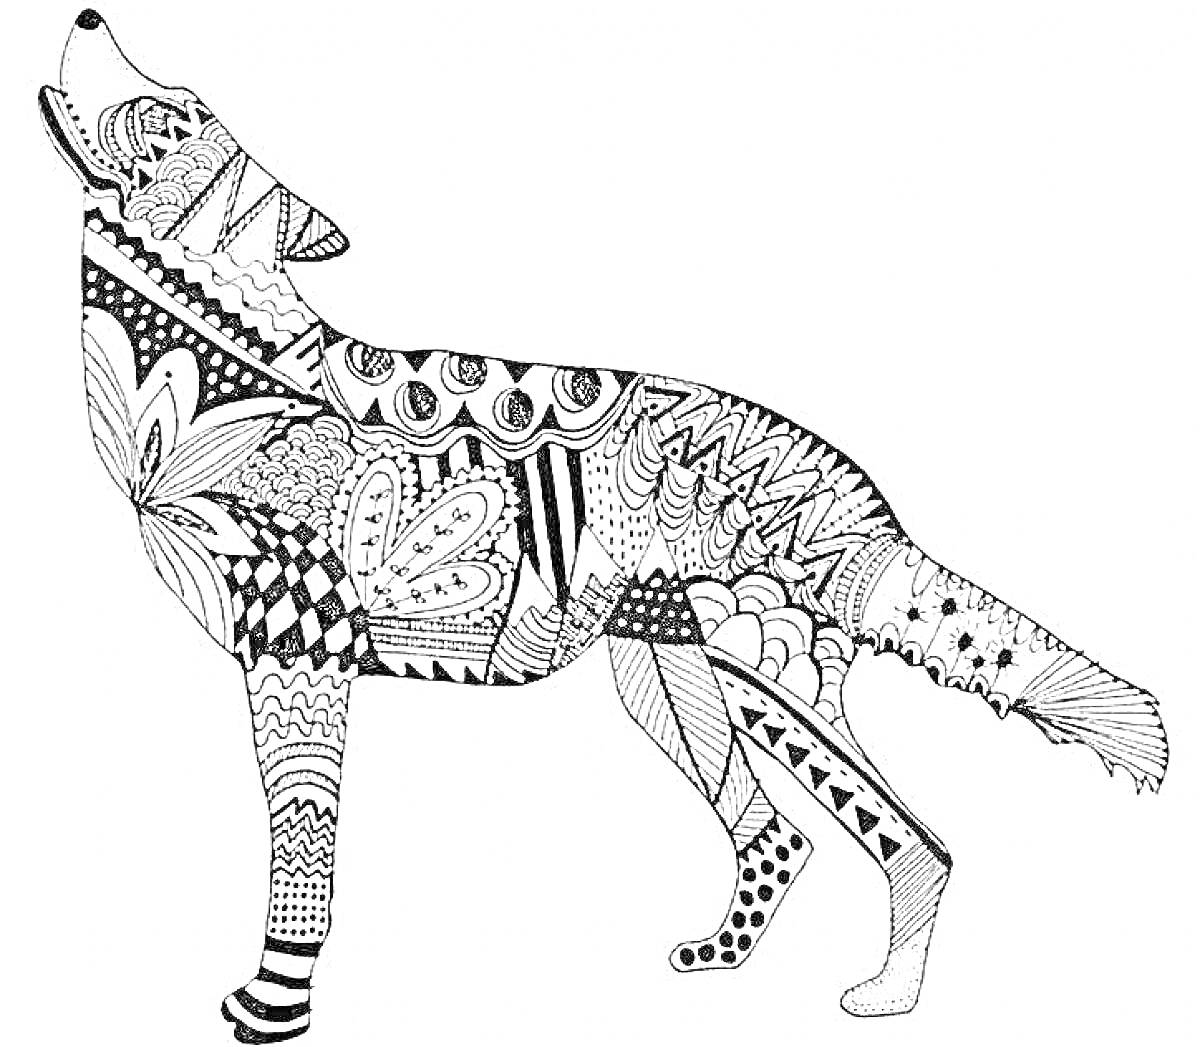 Раскраска Антистресс раскраска волка с узорами, включающими цветы, листья, зигзаги, волнистые линии, точки и полосы